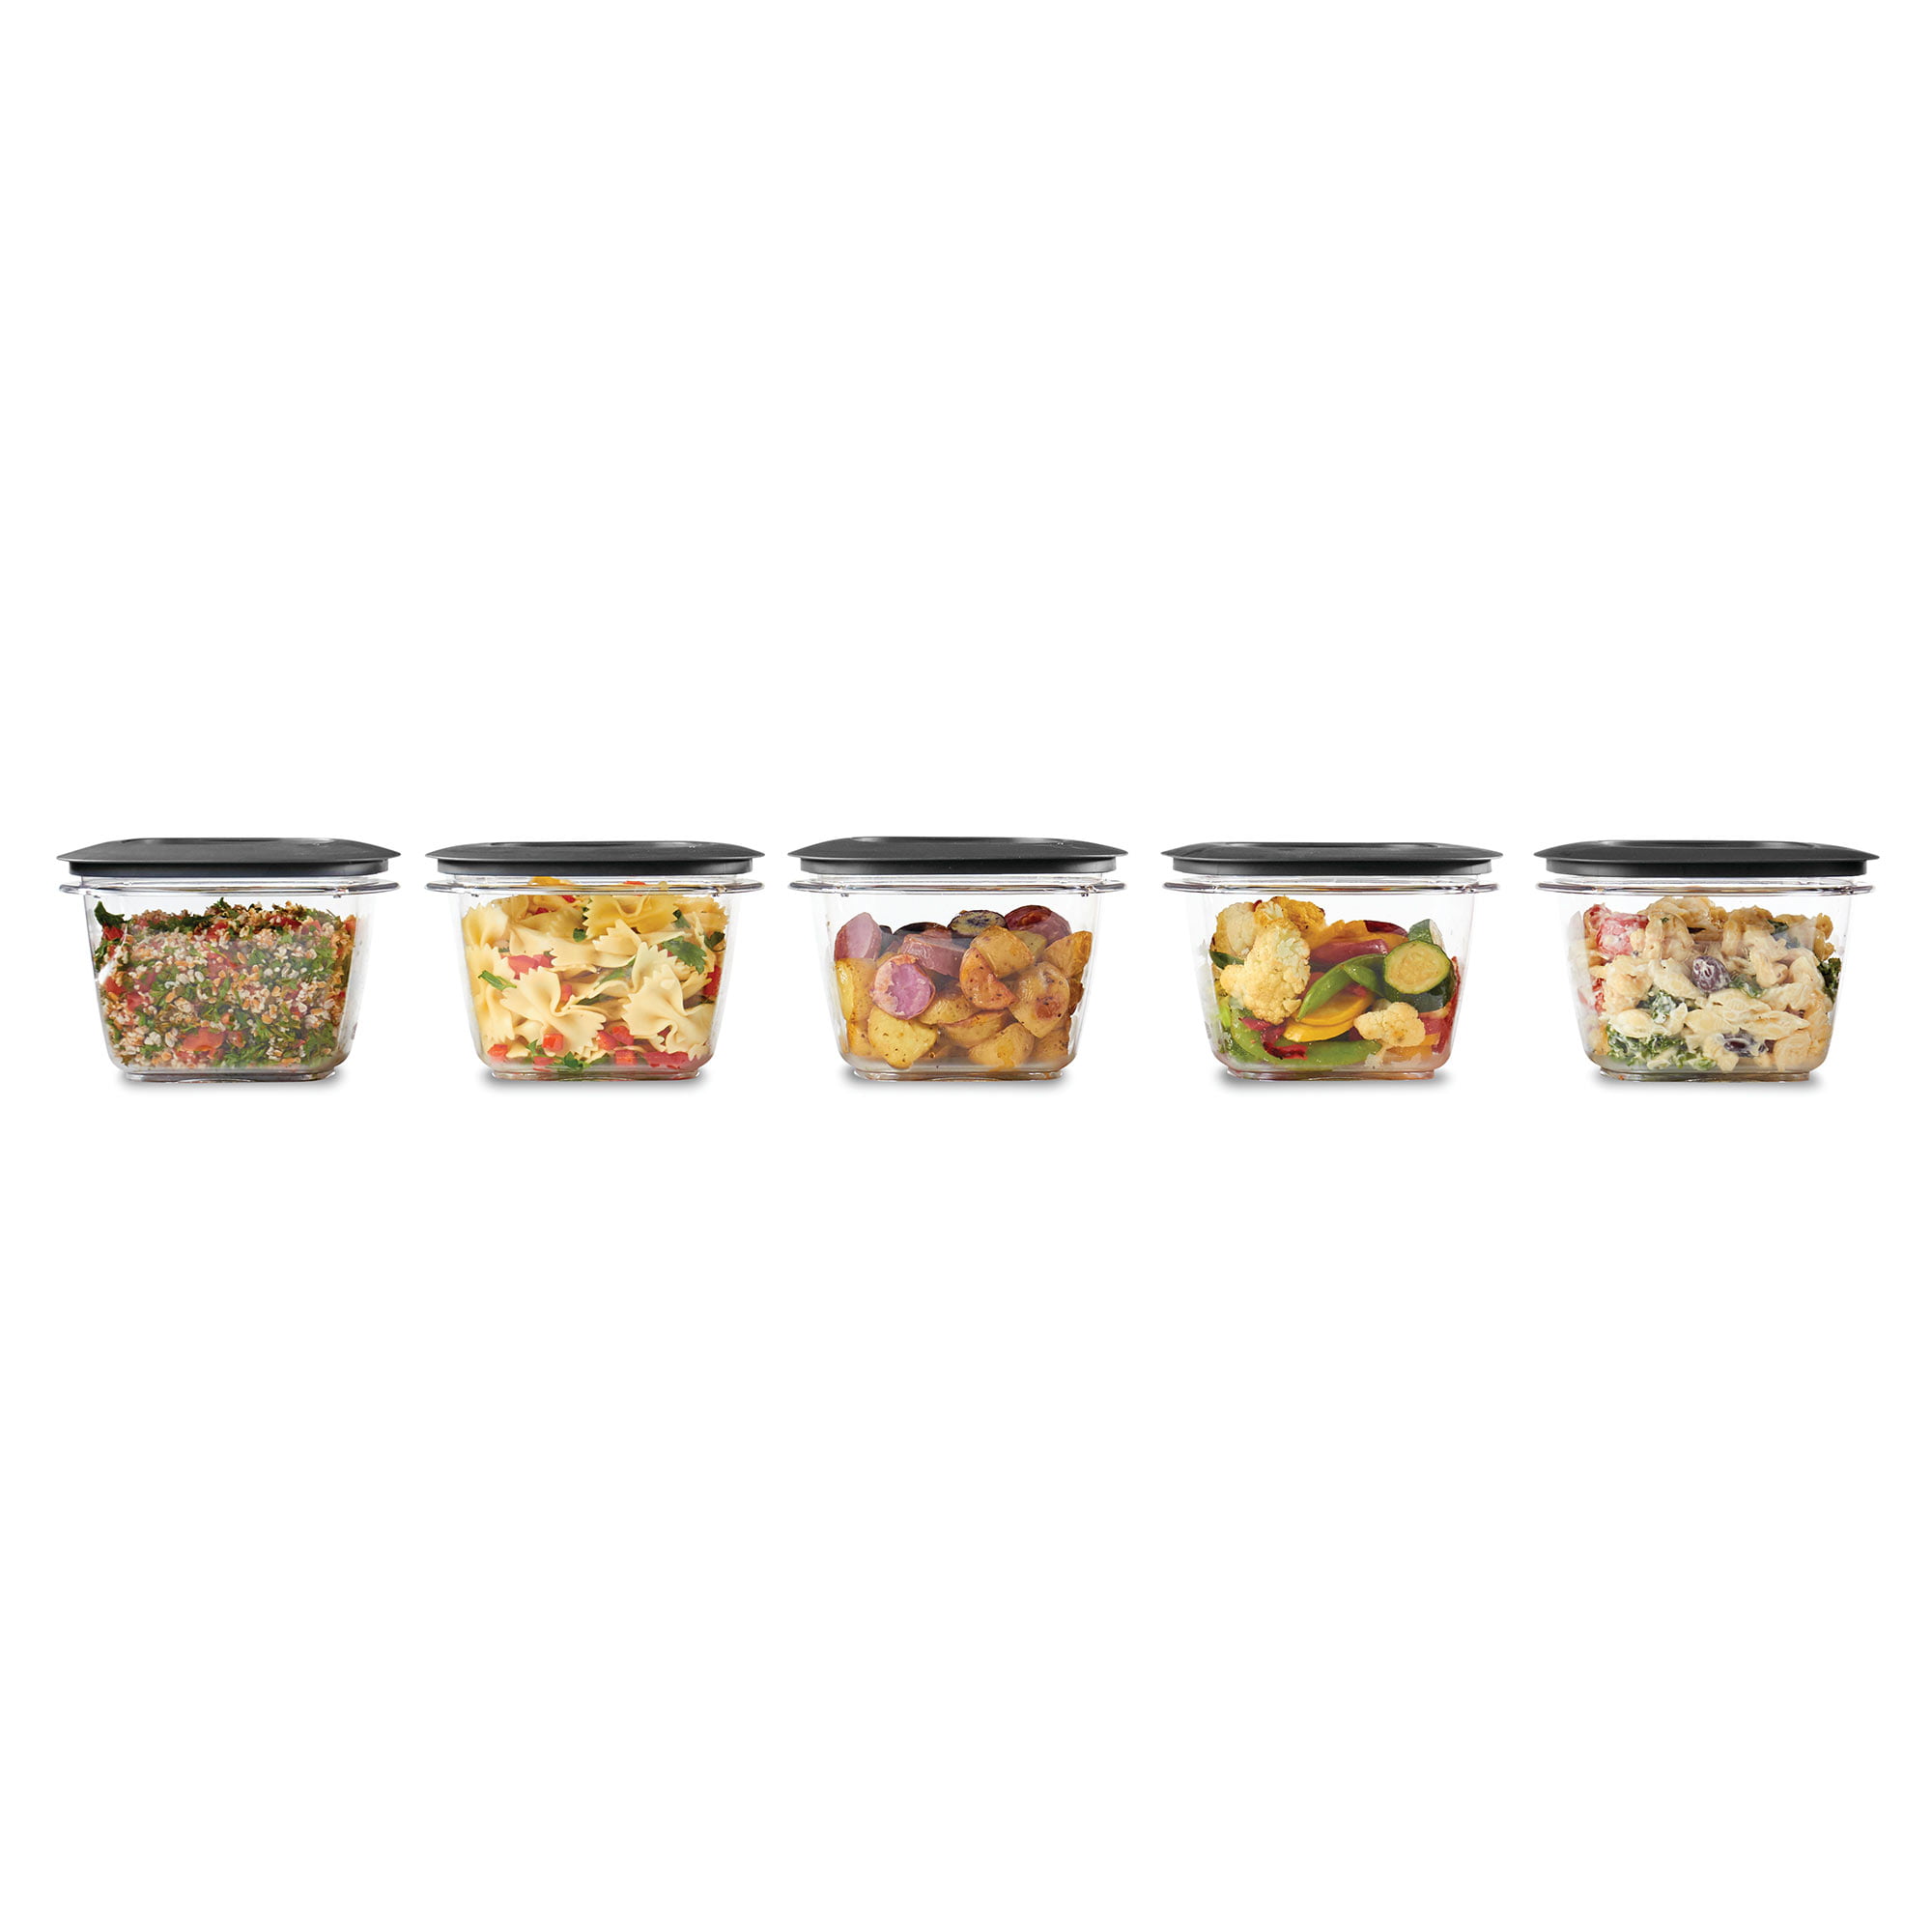 Utensilux Rubbermaid Premier, 7 Cup Premier Flex & Seal Food Storage Set, 3 Tritan Containers, 3 Grey Flex and Seal Lids, 6 Piece Bundle Set Bundle